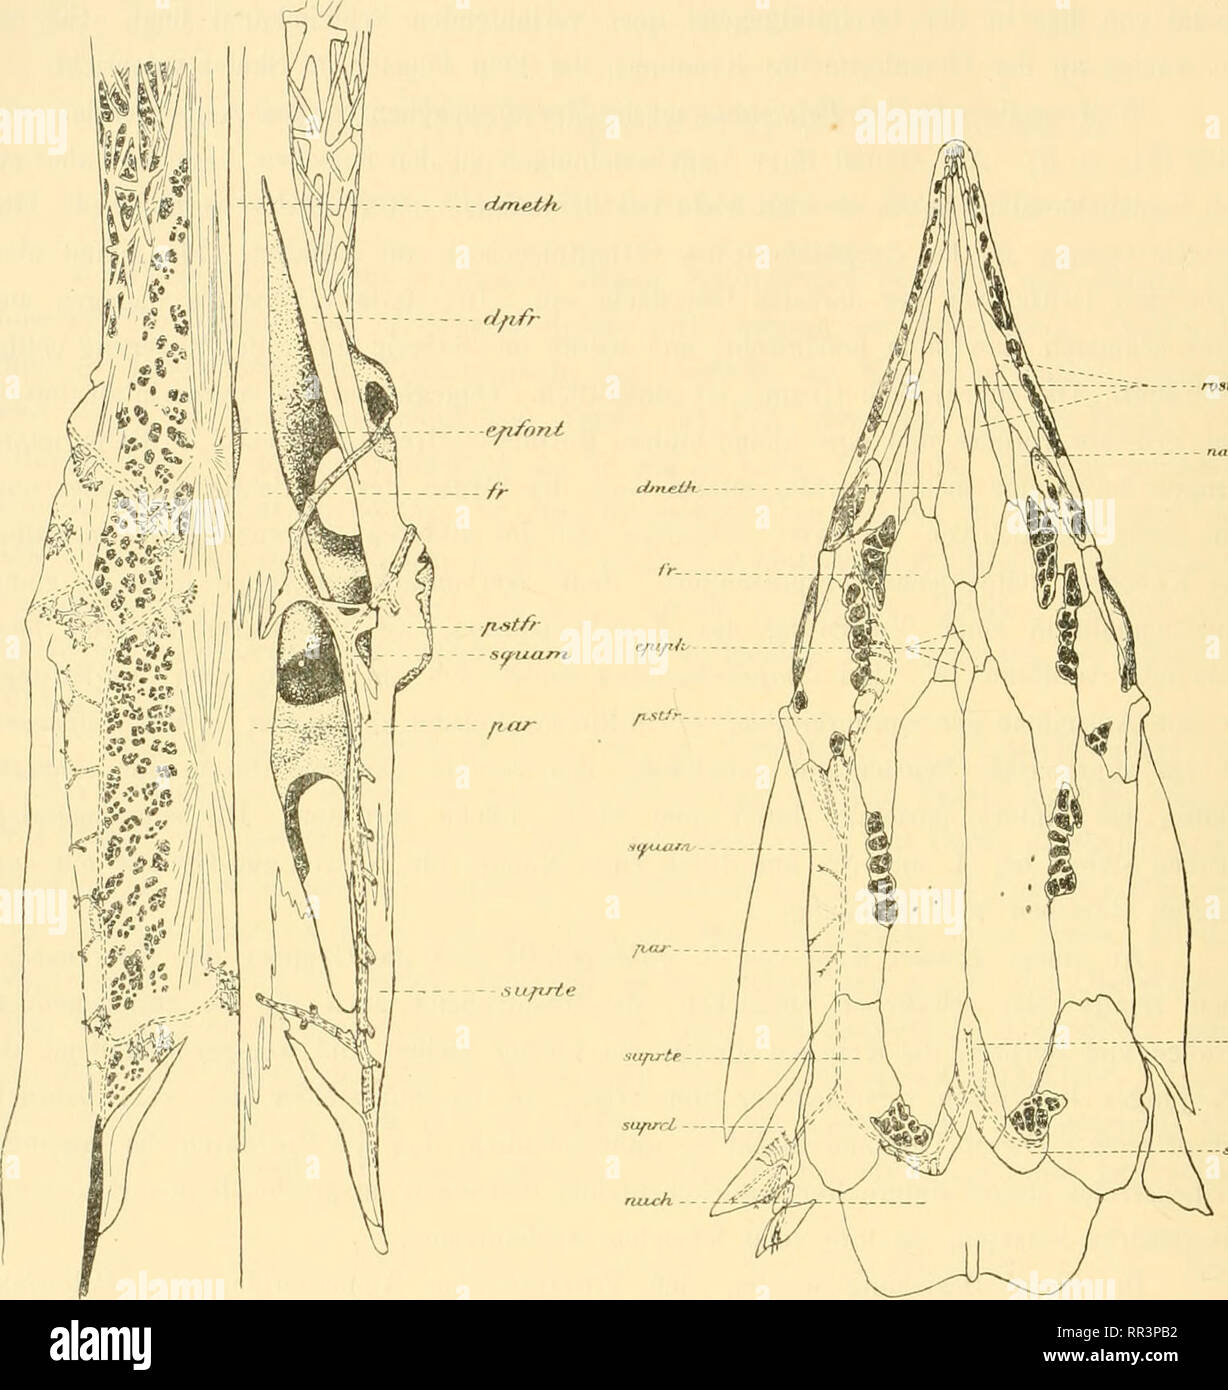 . Acta Societatis Scientiarum Fennicae. Science. A- LuTHEJi.. Fig. 3. Polyodon frdiuiii Kopf (ohne Rostrum) von oben. Links ist die Haut erlialten um die Verteilun.tf der SinneskaiiiUe und der NervensJlck- chen (schwarze Flecke) zu zeigen. Rechts ist das Skelet dargestellt. Knochen weiss, Knorpel punk- tiert, '/4 nat. Gr. Vii. 4. Äripeiiscr riithcinis. Dorsalansicht des Kopfes mit den Xor'ensäckchen (scliwarz). Etwa 1 ',', nat. ür. Bezeichnungen vt;l. Fiy. i. (les Eostrnms ' offeiil);u- mit einer starken Vergrösseming des Gebiets der rostraleii Ner- vensäckclienfelder in Zusanimeniiang- stel Stock Photo